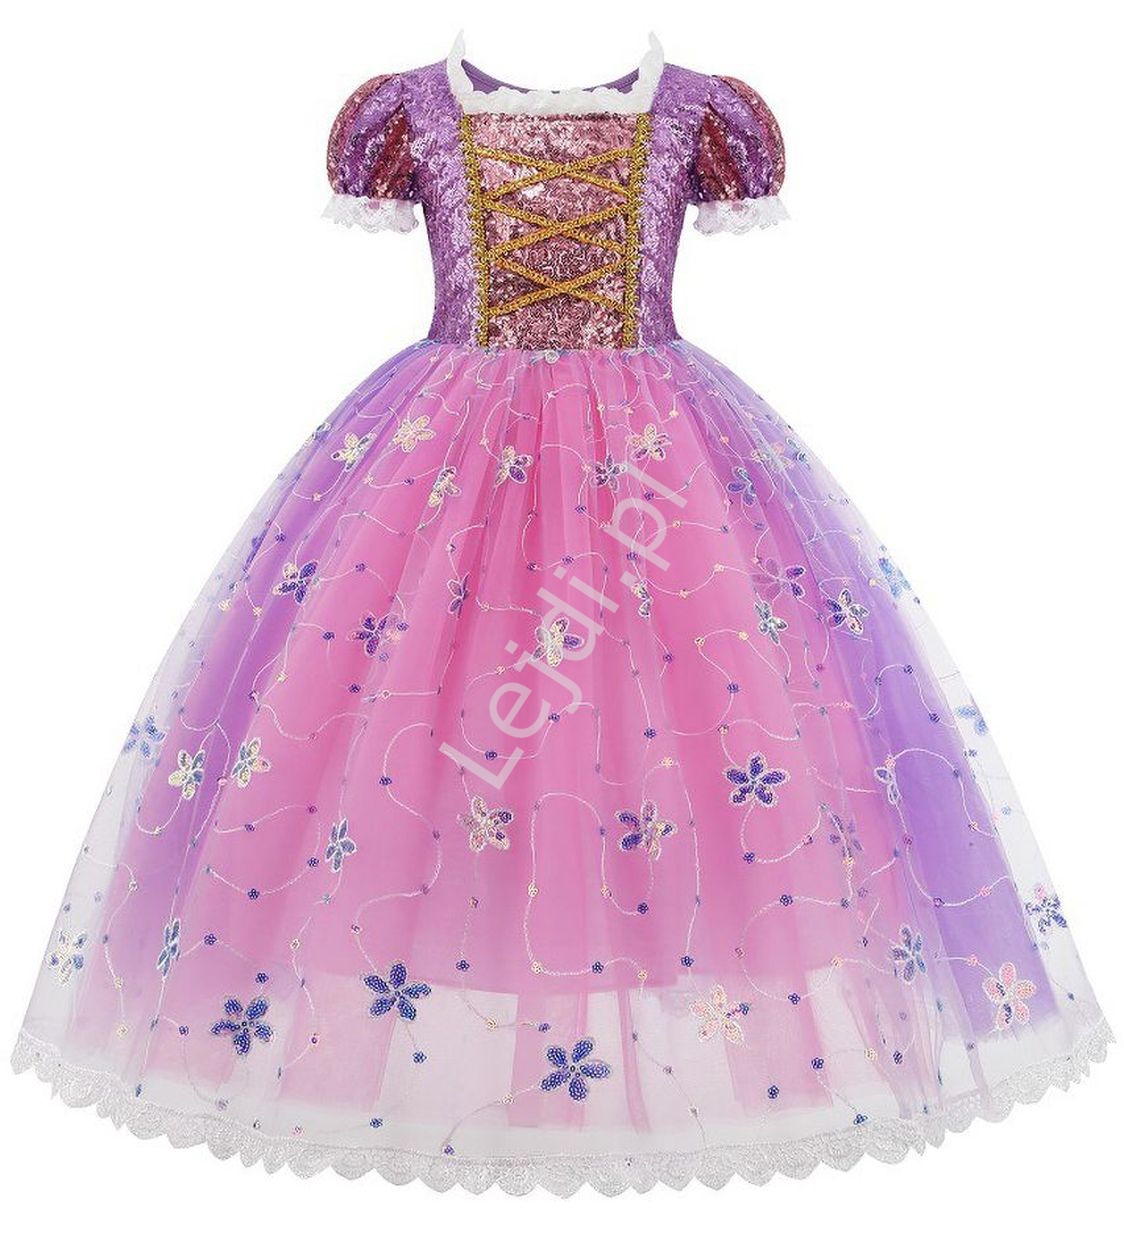  Dziecięca sukienka na bal karnawałowy, strój Roszpunki